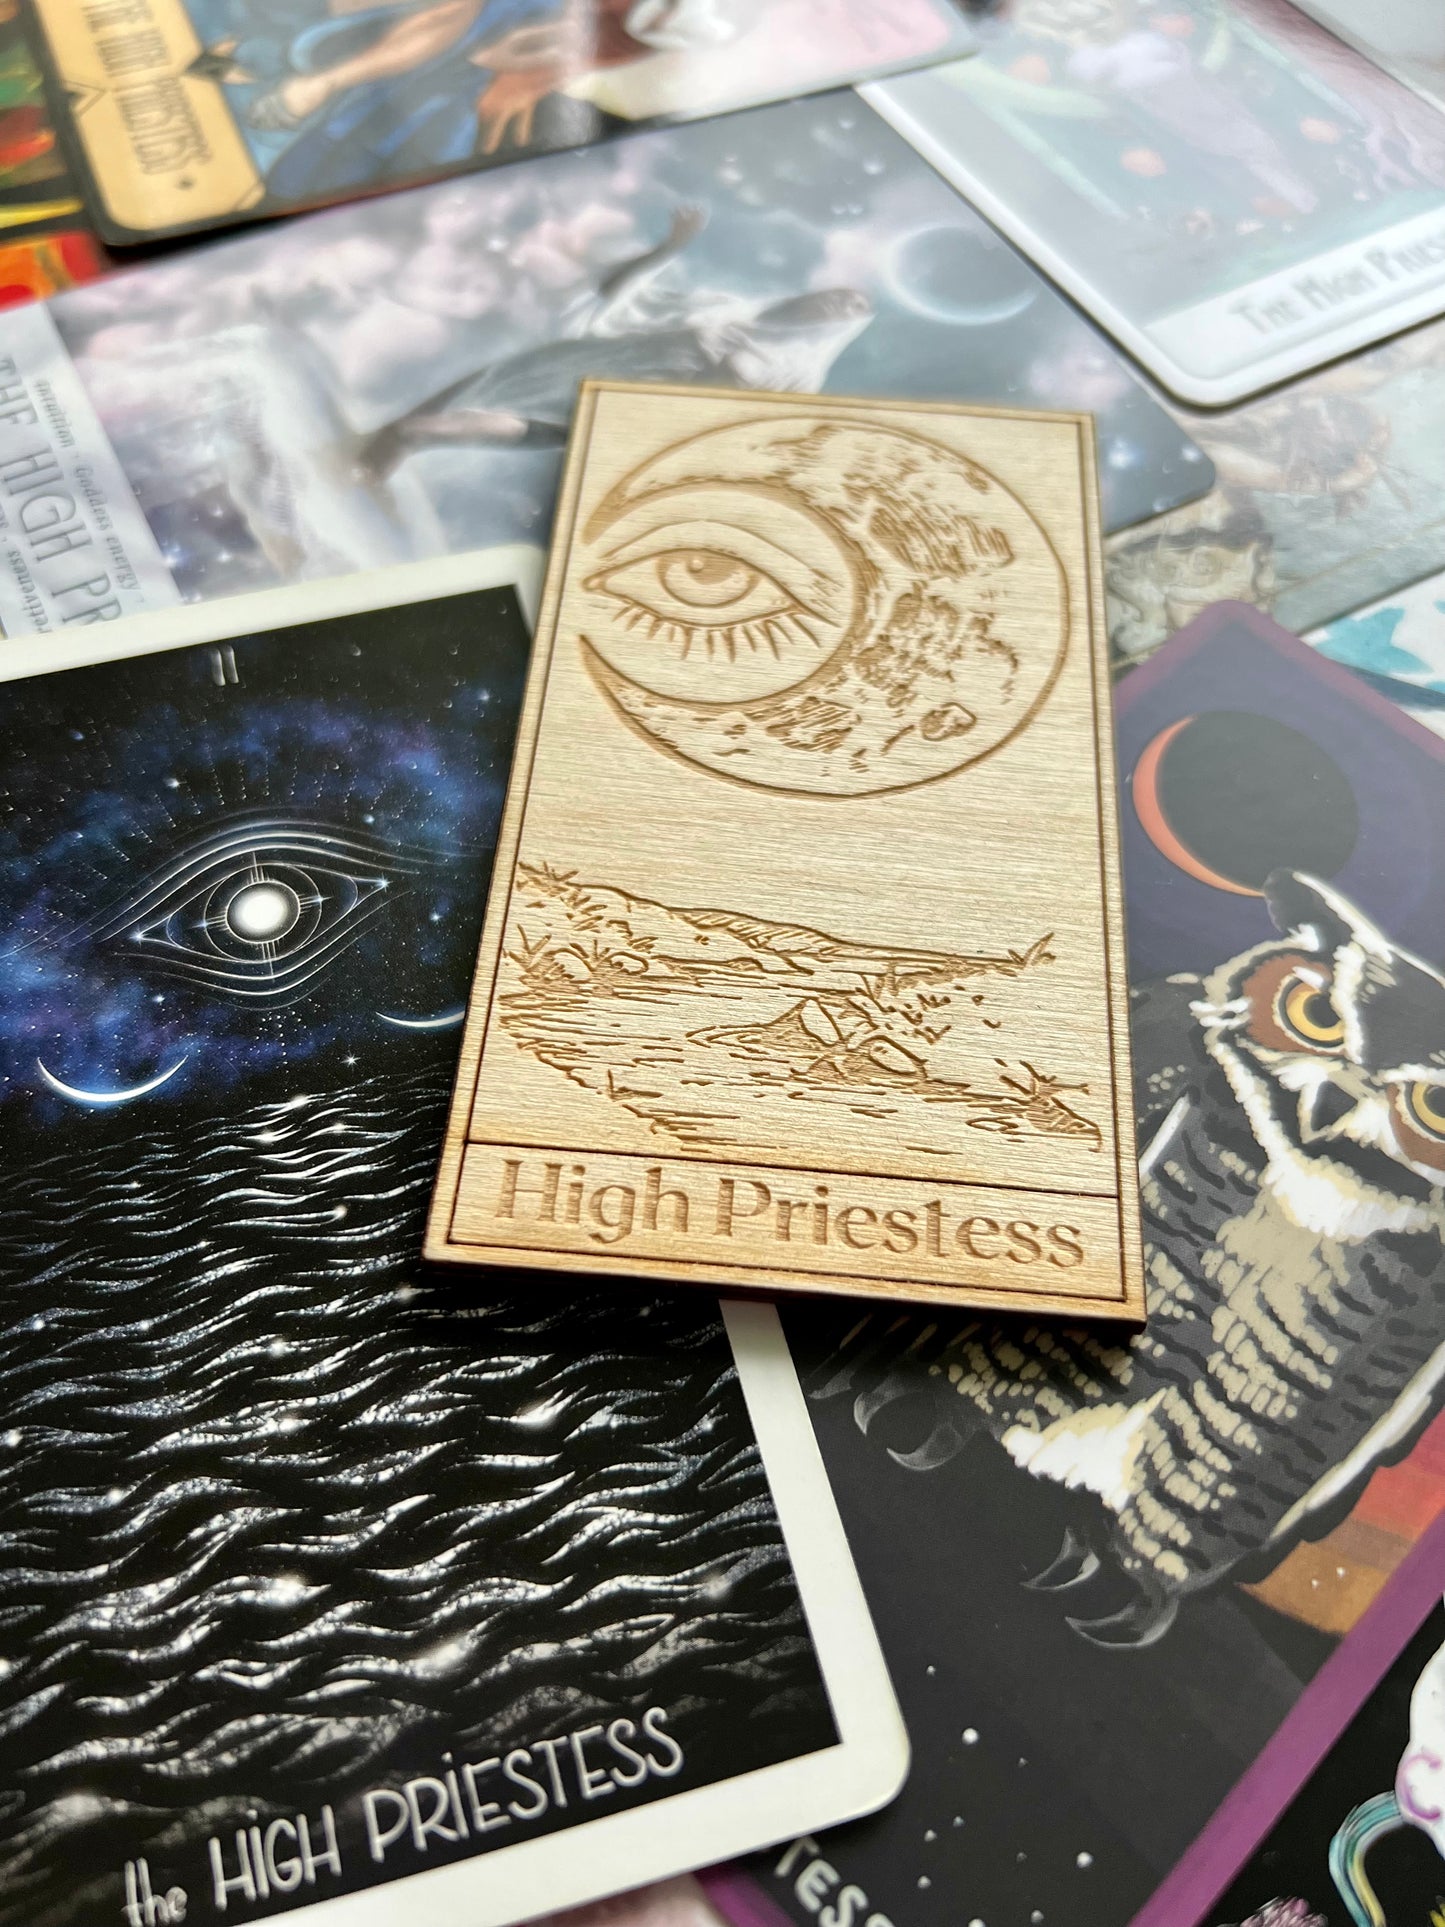 Tarot Deck Card Magnets Wooden Tarot Card Magnets The Moon Tarot Card The Sun Tarot Card High Priestess Tarot Card Death Tarot Card Decks